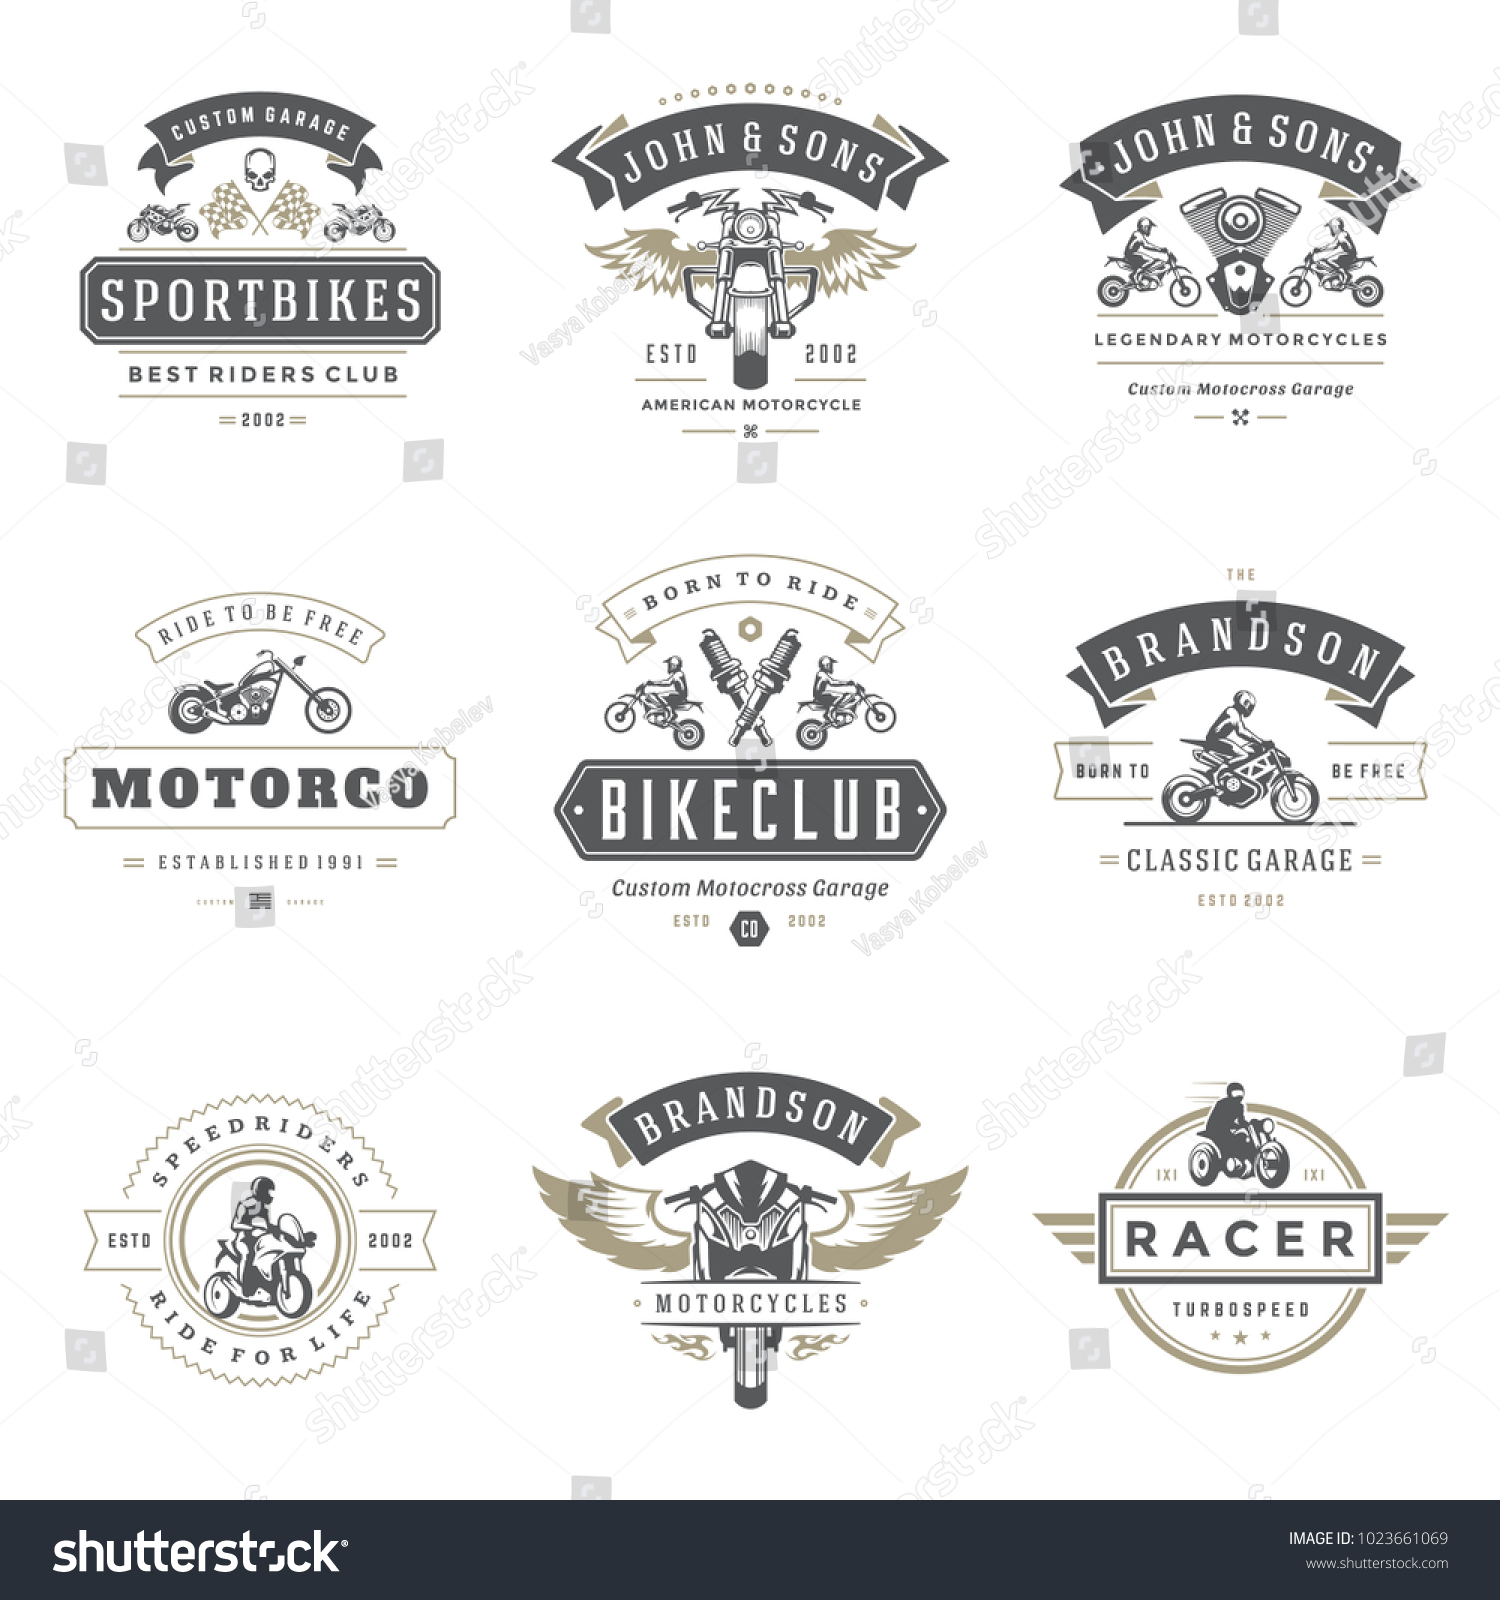 Motorcycles Logos Templates Vector Design Royalty Free Stock Vector